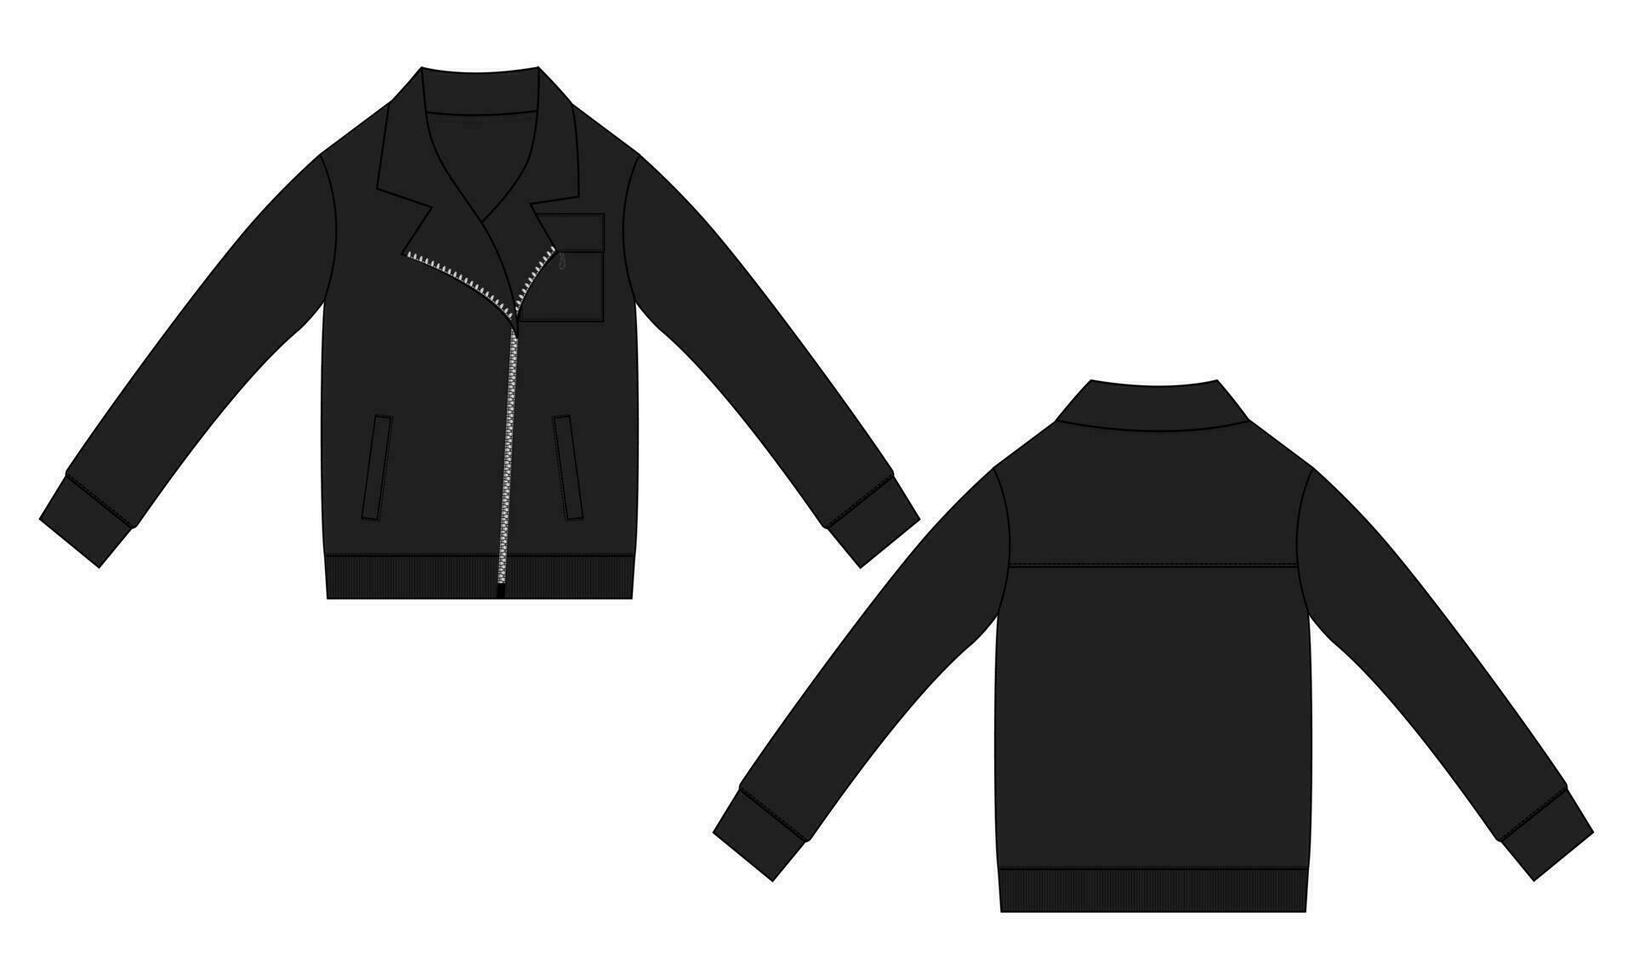 lana tela abrigos chaqueta camisa de entrenamiento técnico Moda plano bosquejo vector ilustración modelo frente y espalda vista. vestir chaqueta plano dibujo vector negro color burlarse de arriba